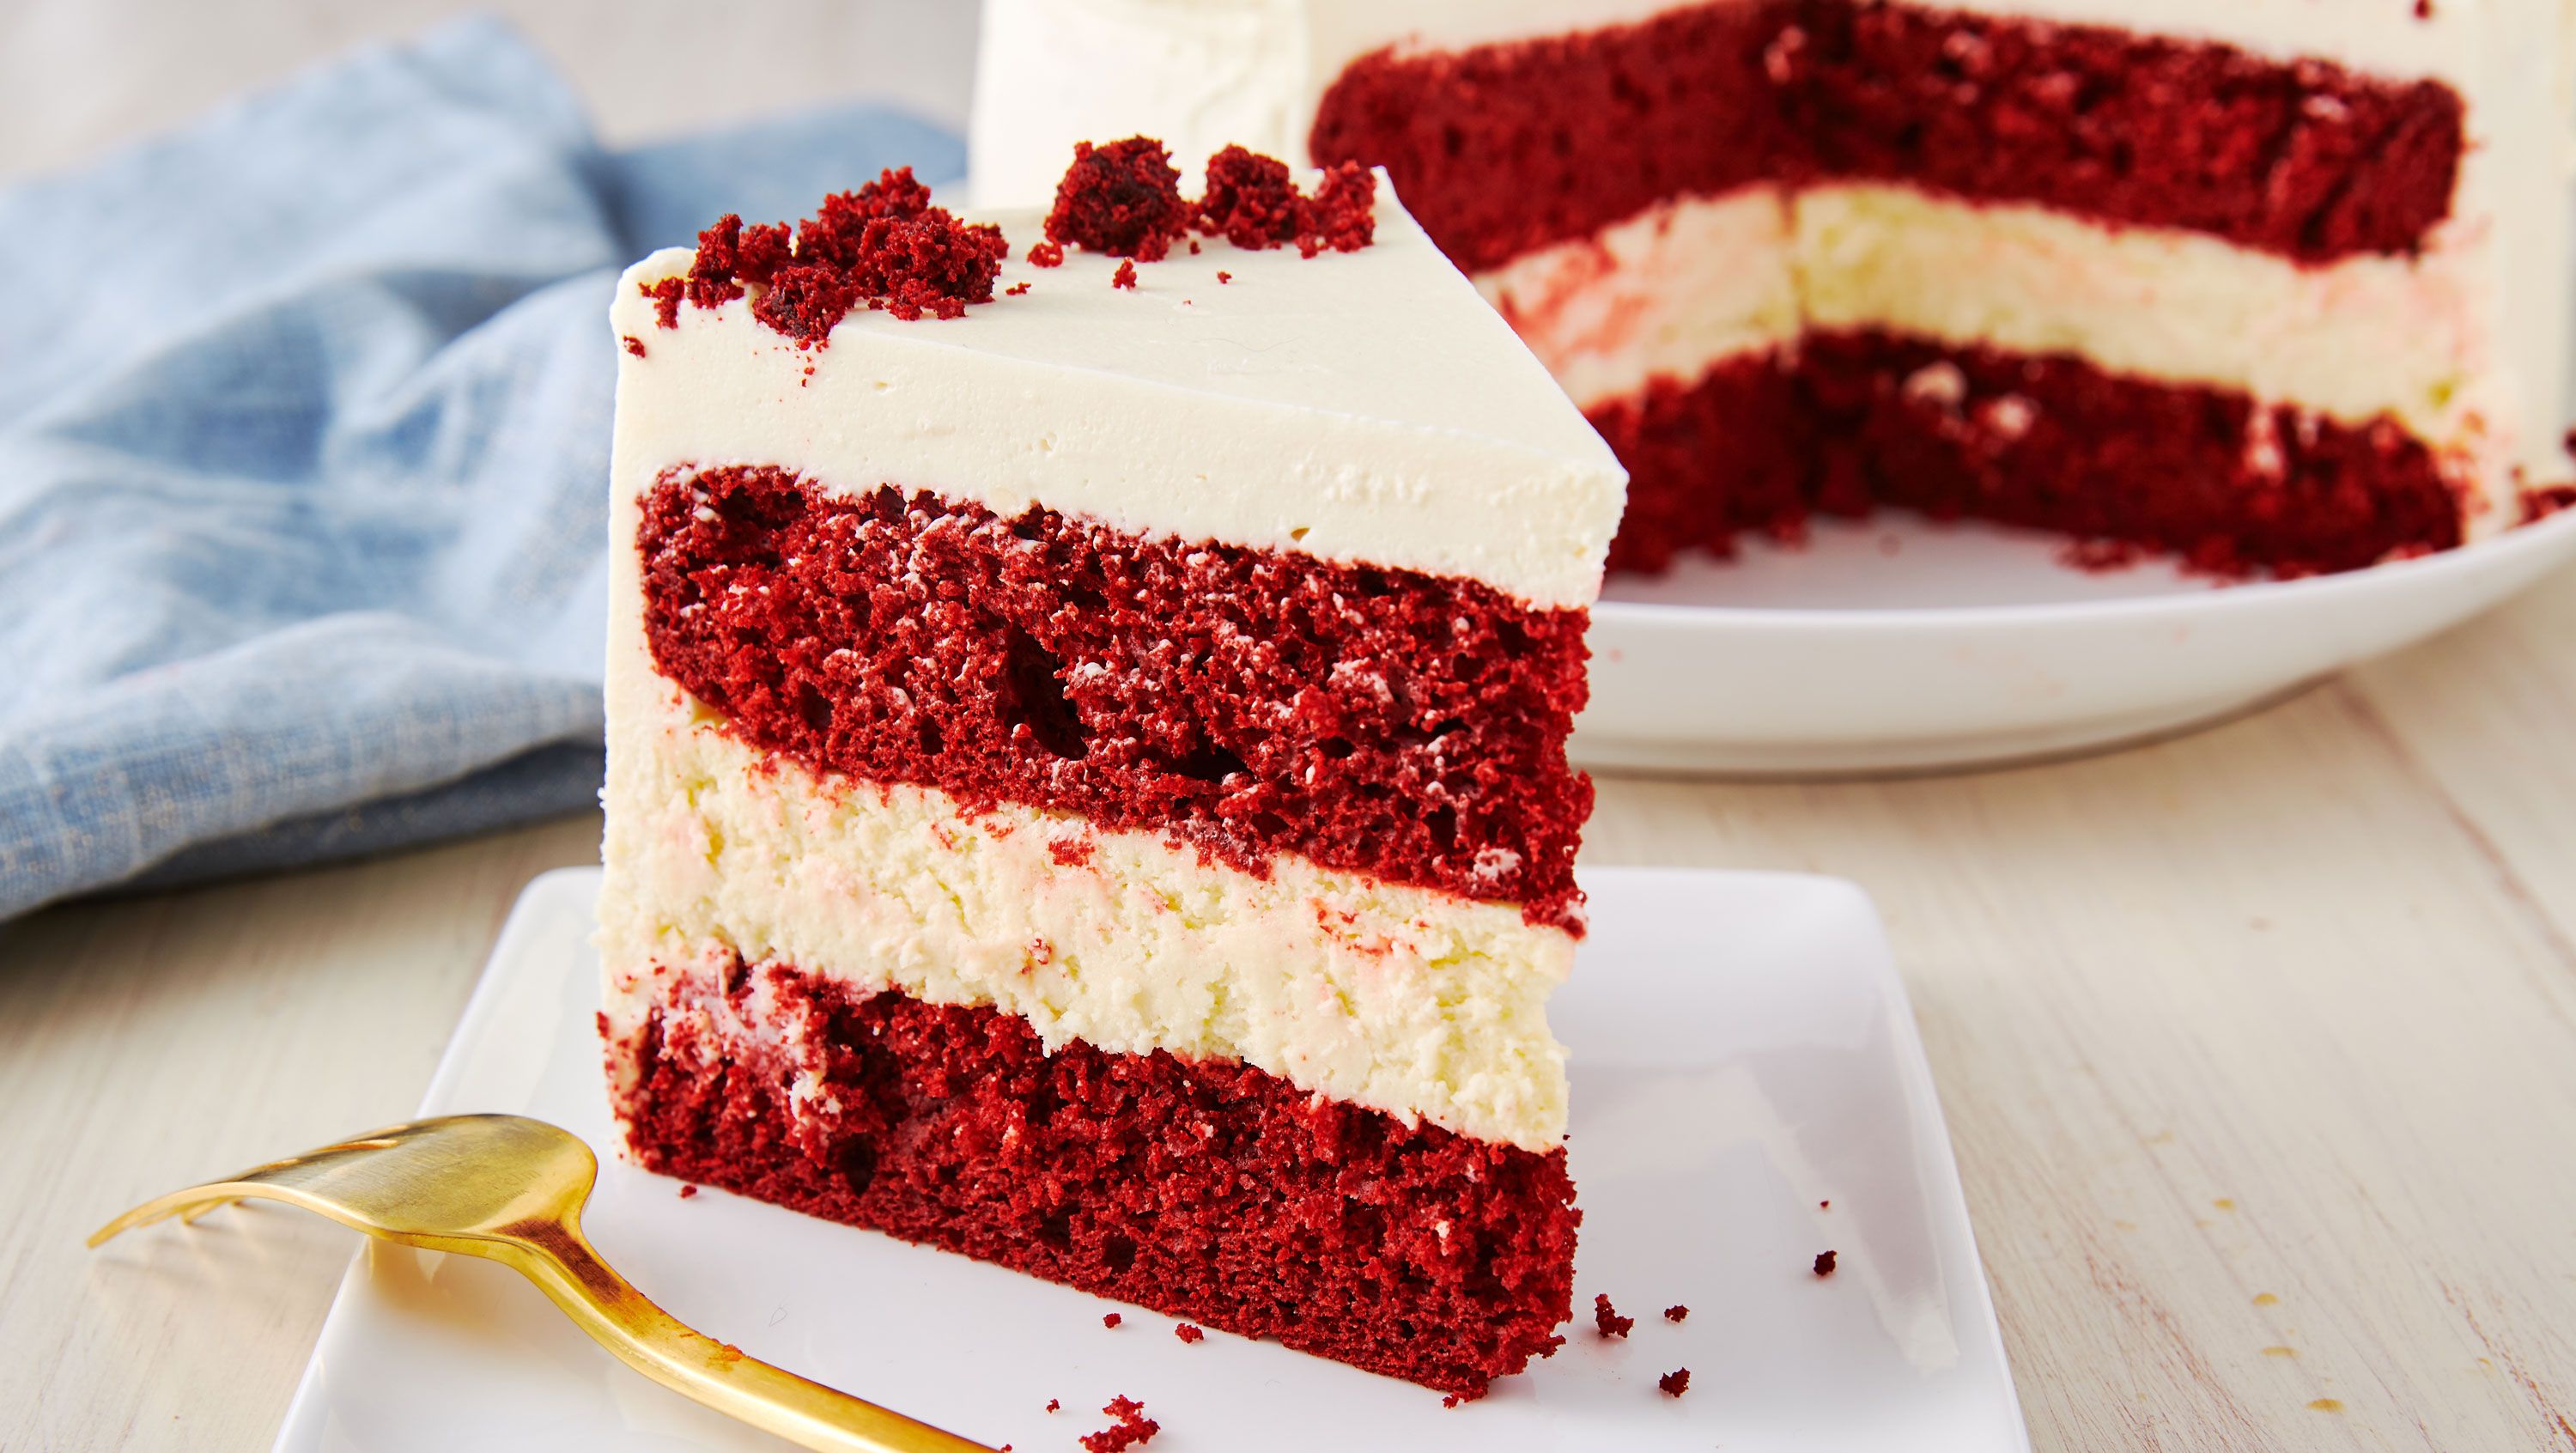 Best Red Velvet Cake Cake Recipe - How To Make Red Velvet Cake